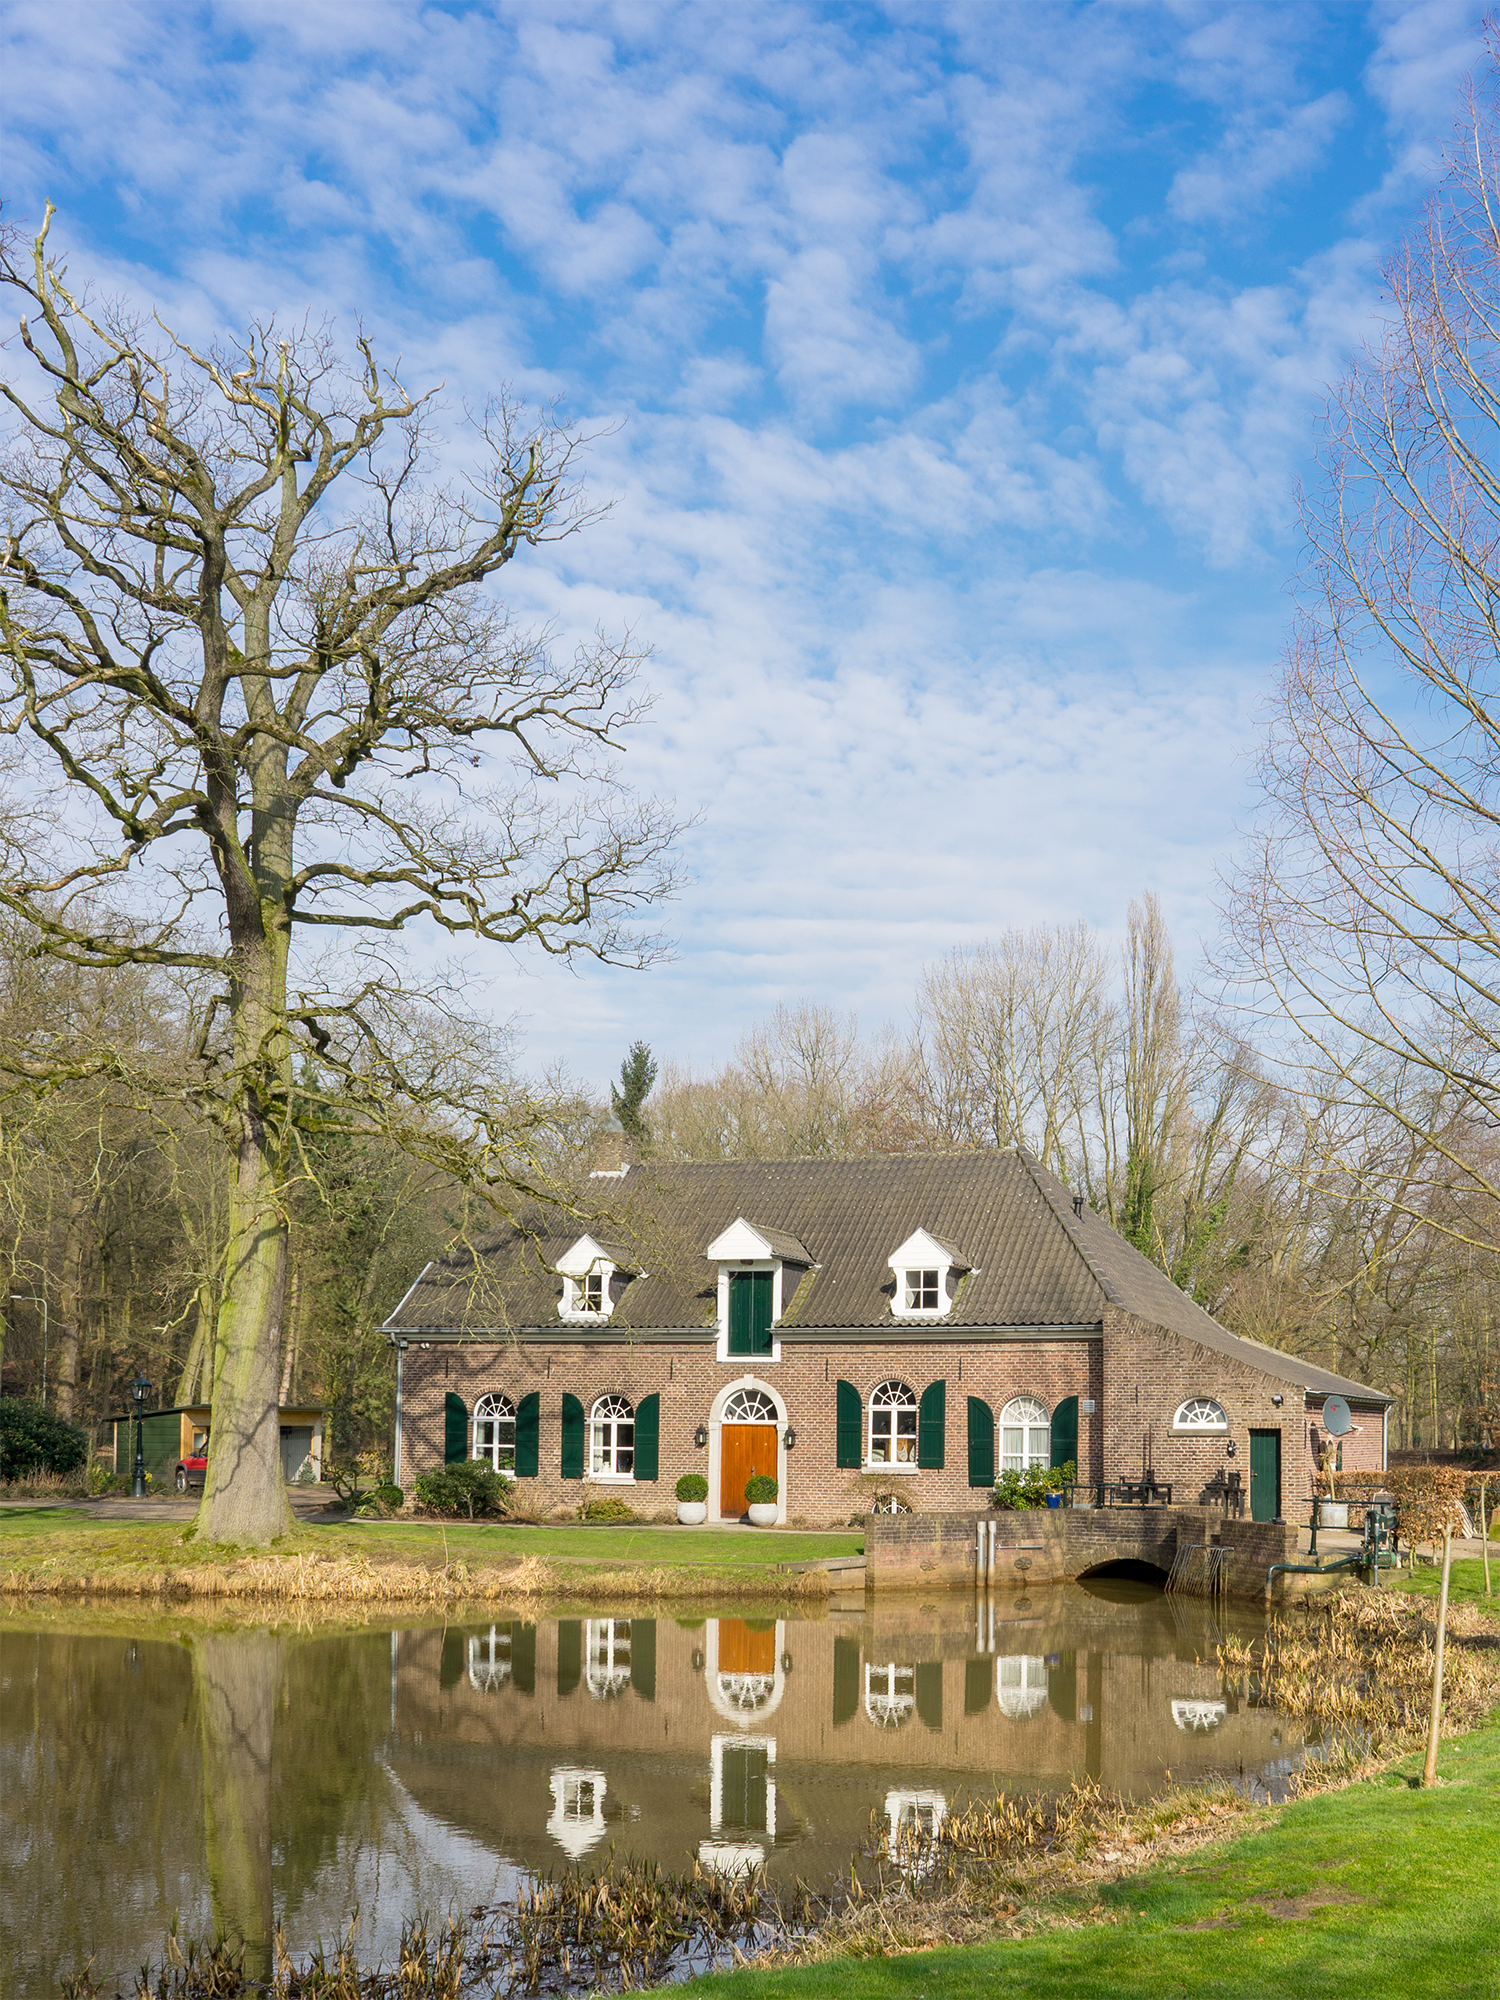 Foto van Slottermolen, Grubbenvorst, Marcel van Nies (20-2-2018) | Database Nederlandse molens